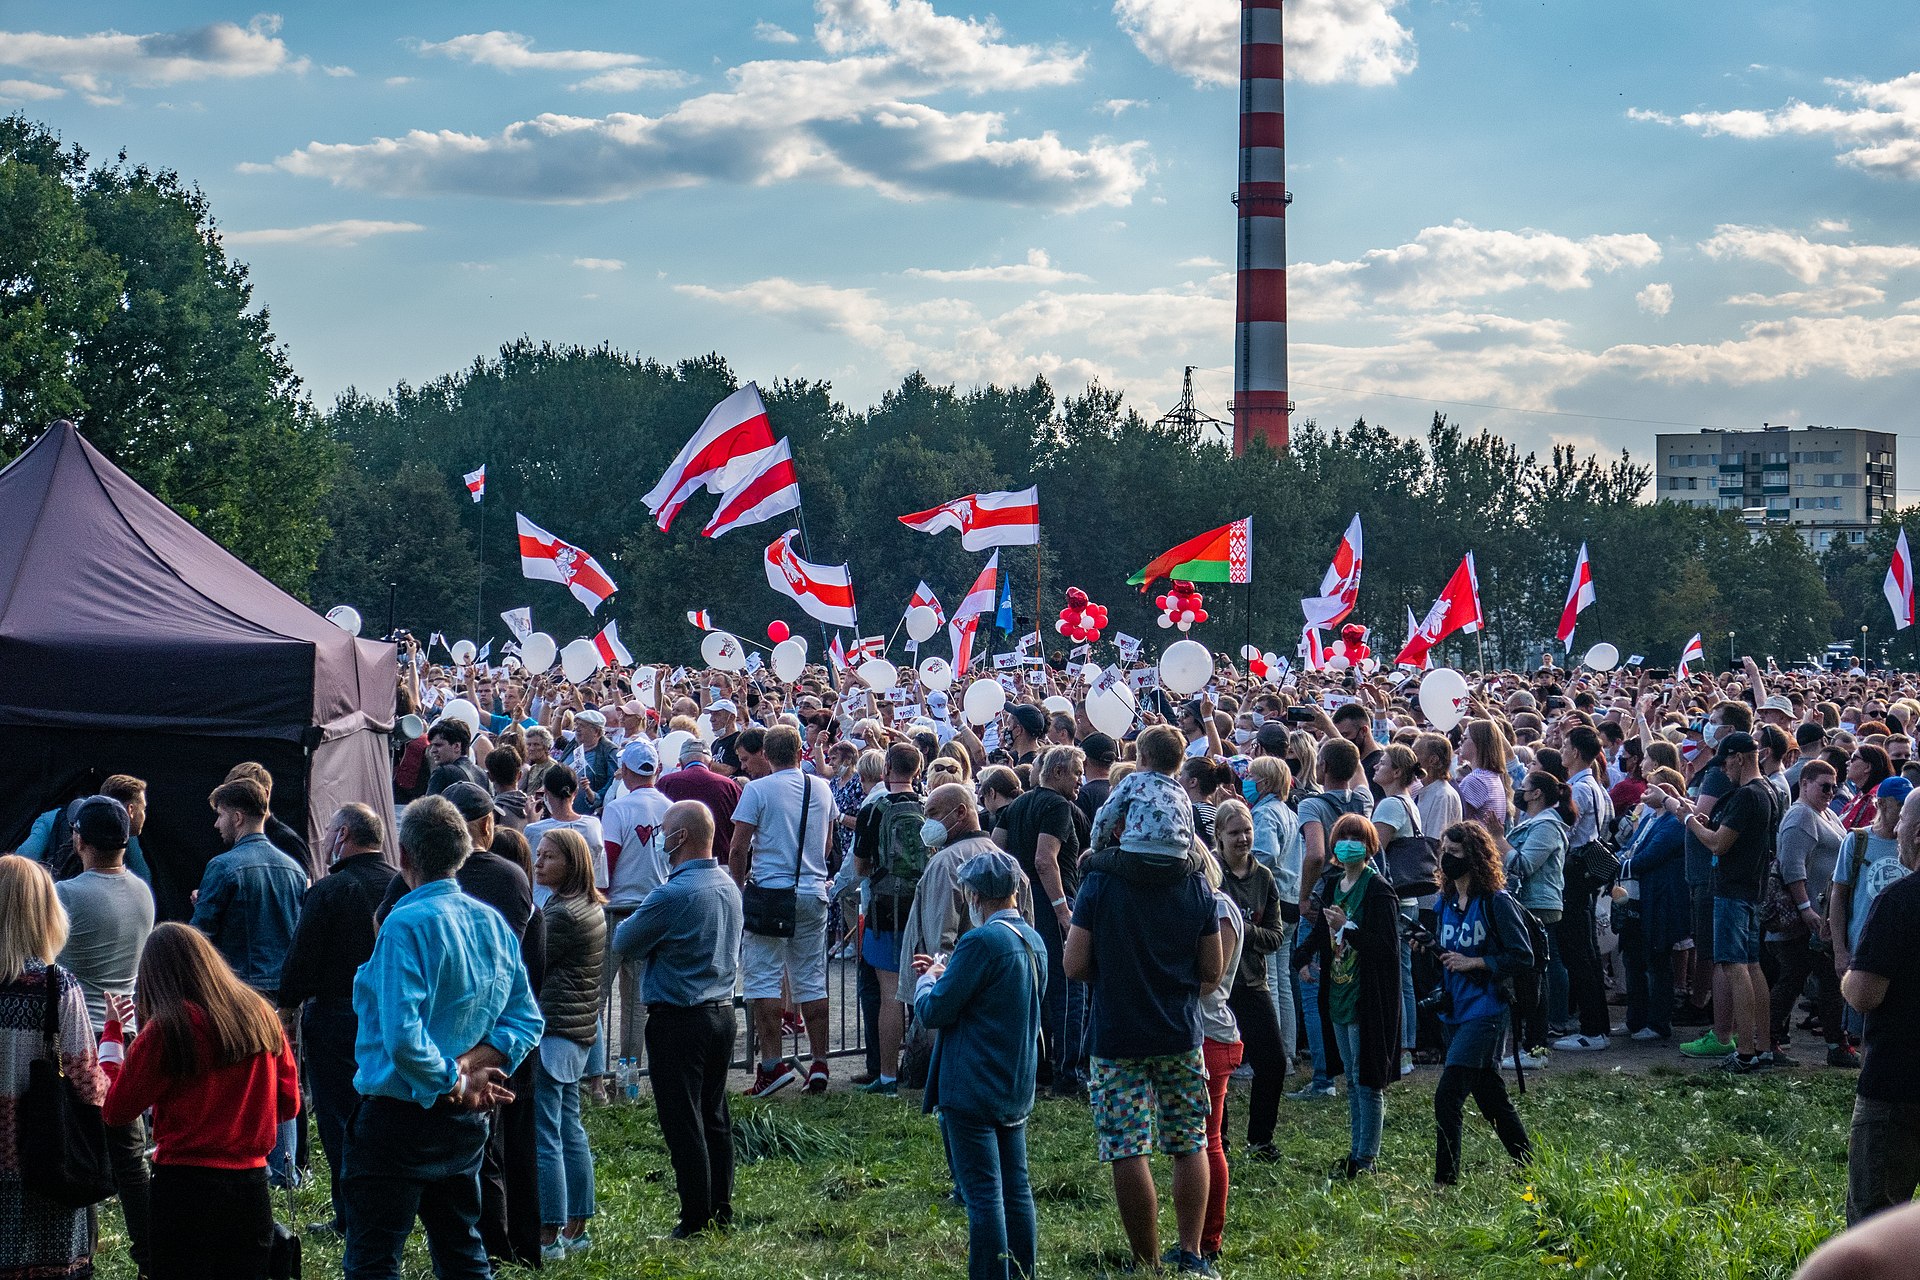 Rassemblement de soutien aux candidates à l'élections présidentielle bélarusse, à Minsk le 30 juillet. Source : Wikimedia Commons.